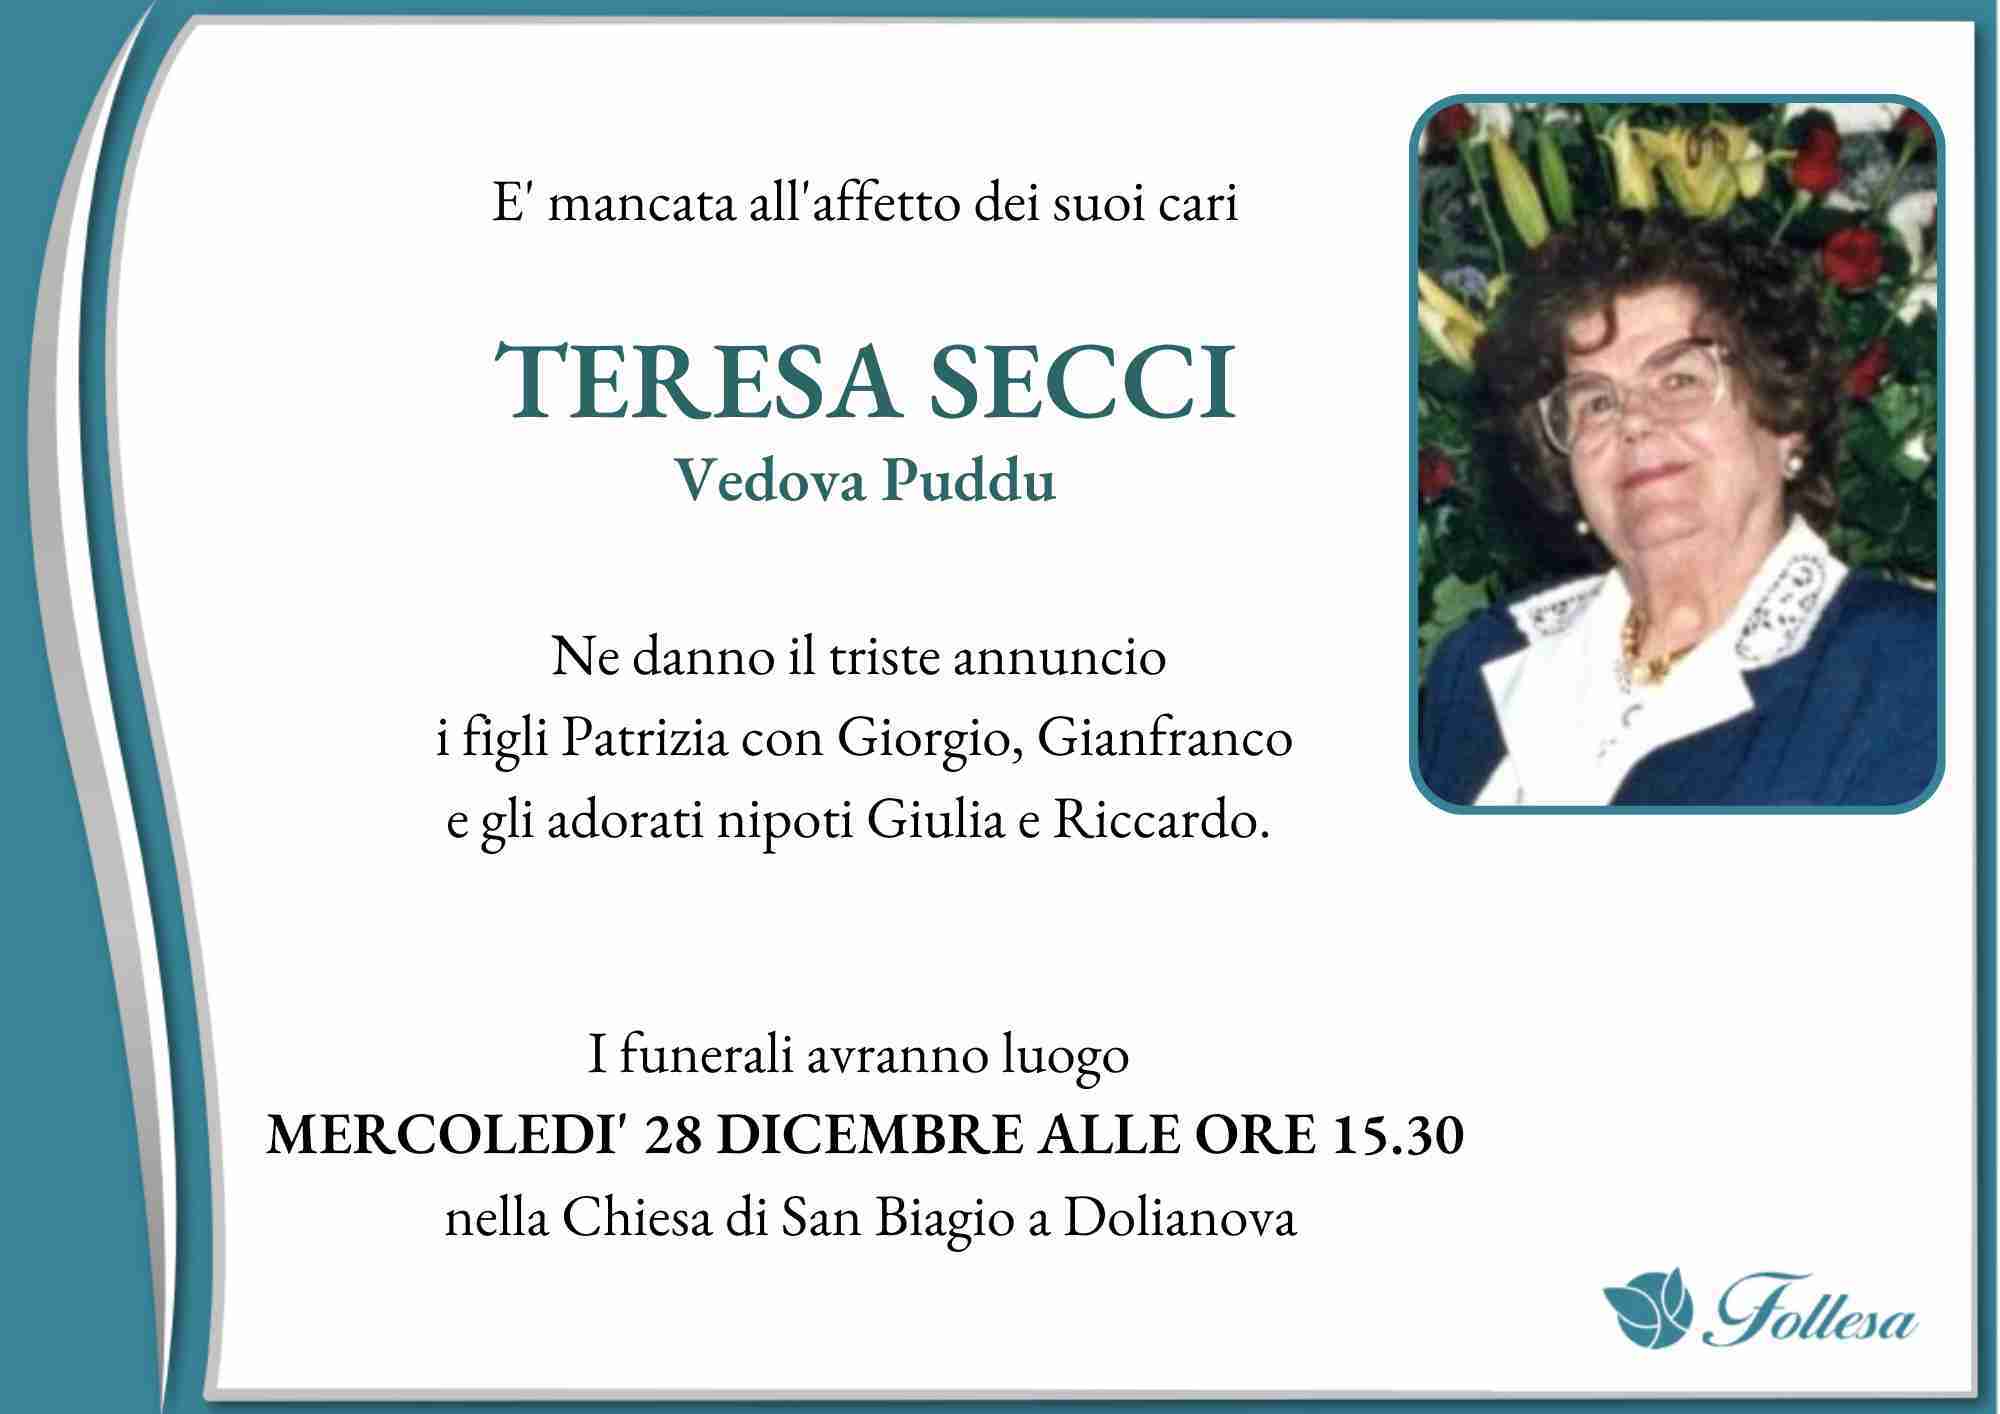 Teresa Secci